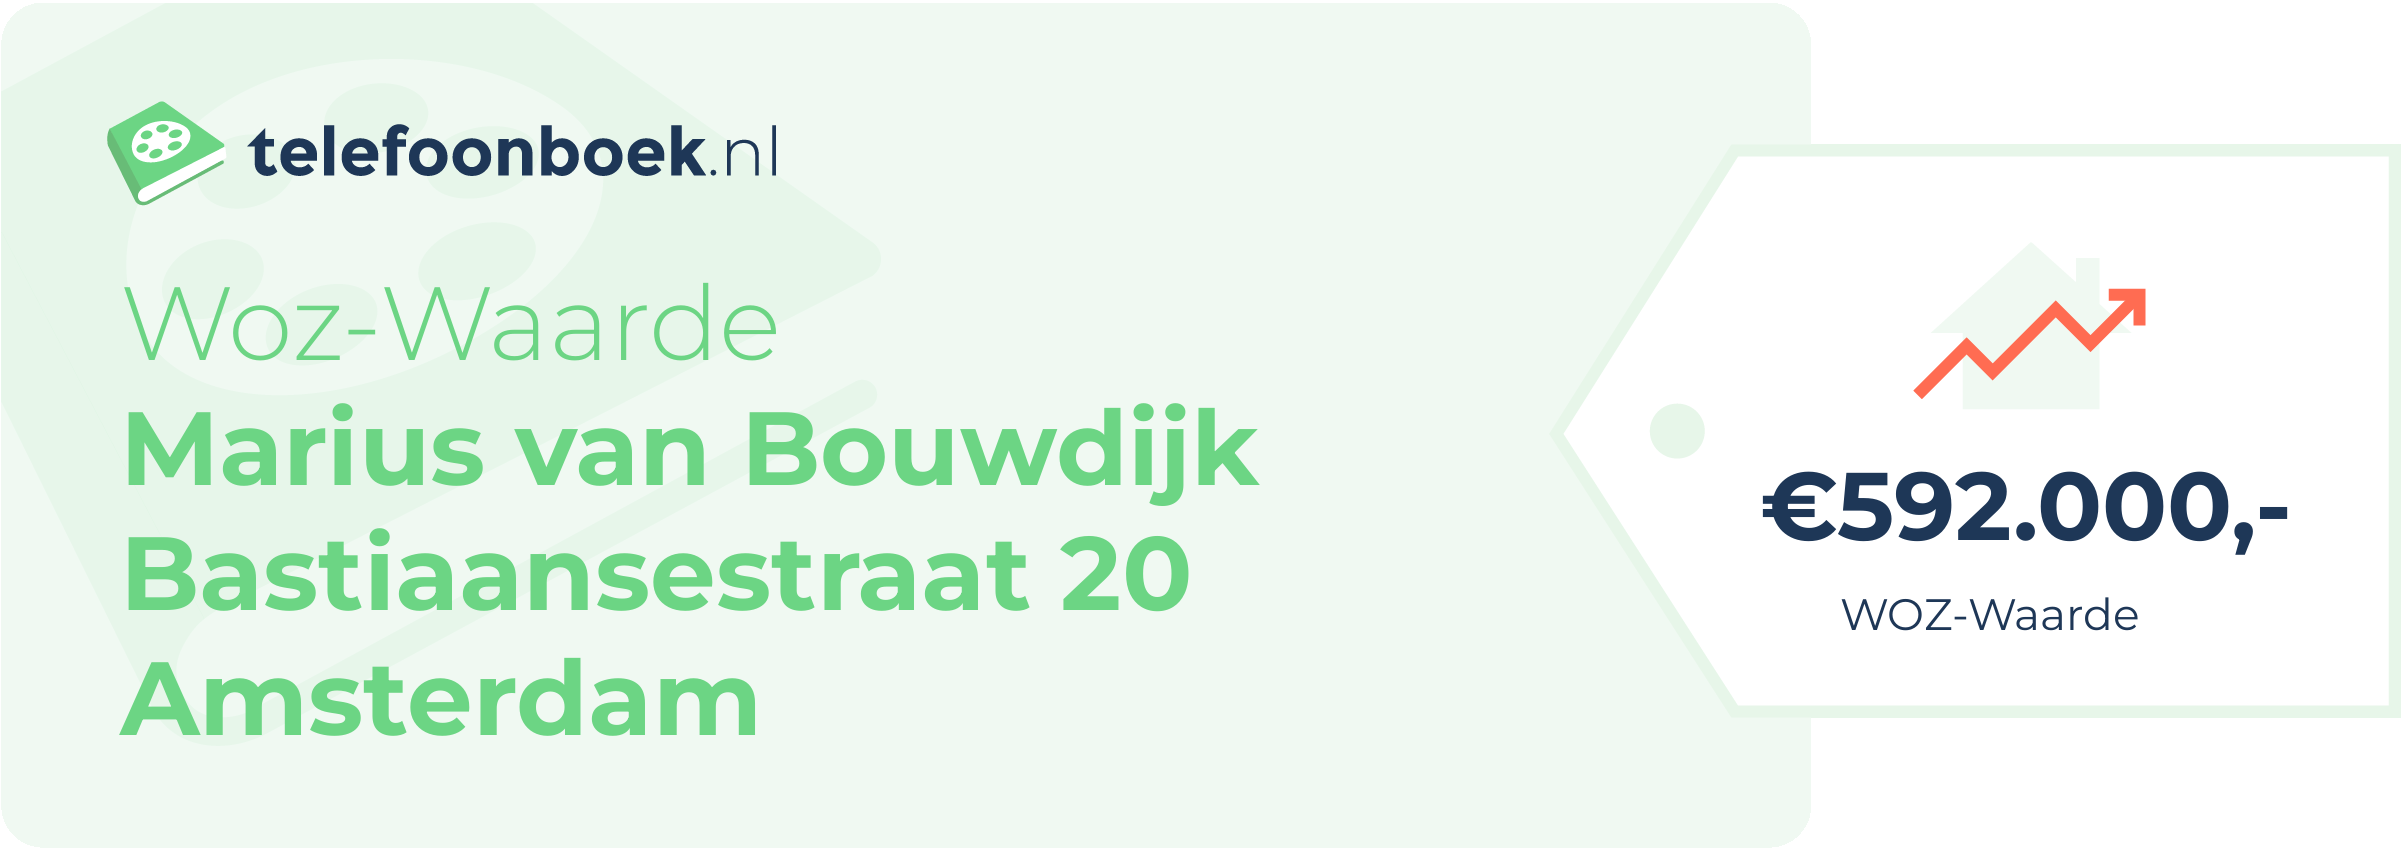 WOZ-waarde Marius Van Bouwdijk Bastiaansestraat 20 Amsterdam